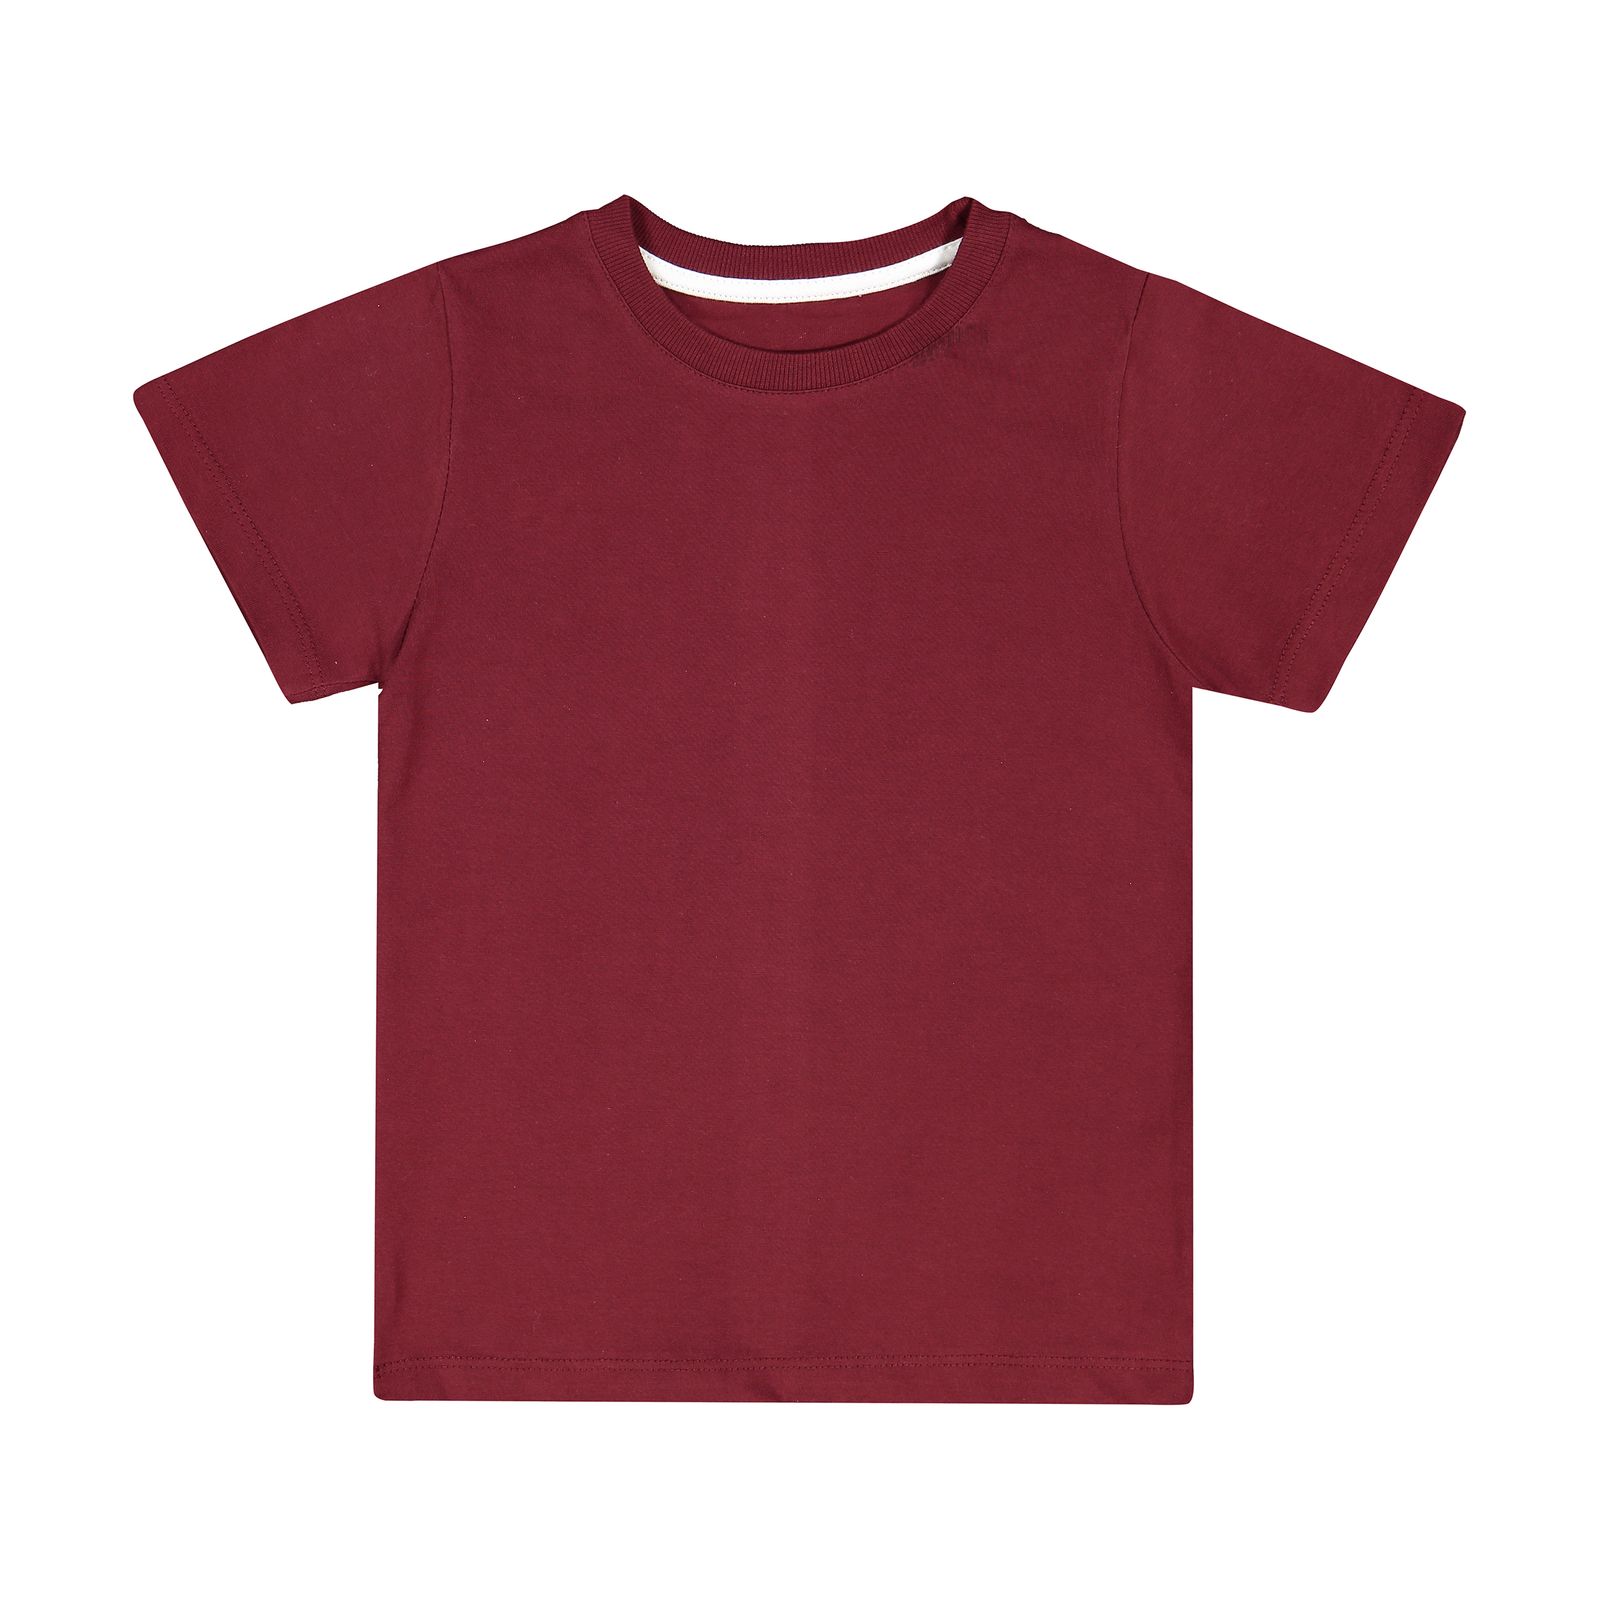 تی شرت بچگانه زانتوس مدل 141010-70 -  - 1